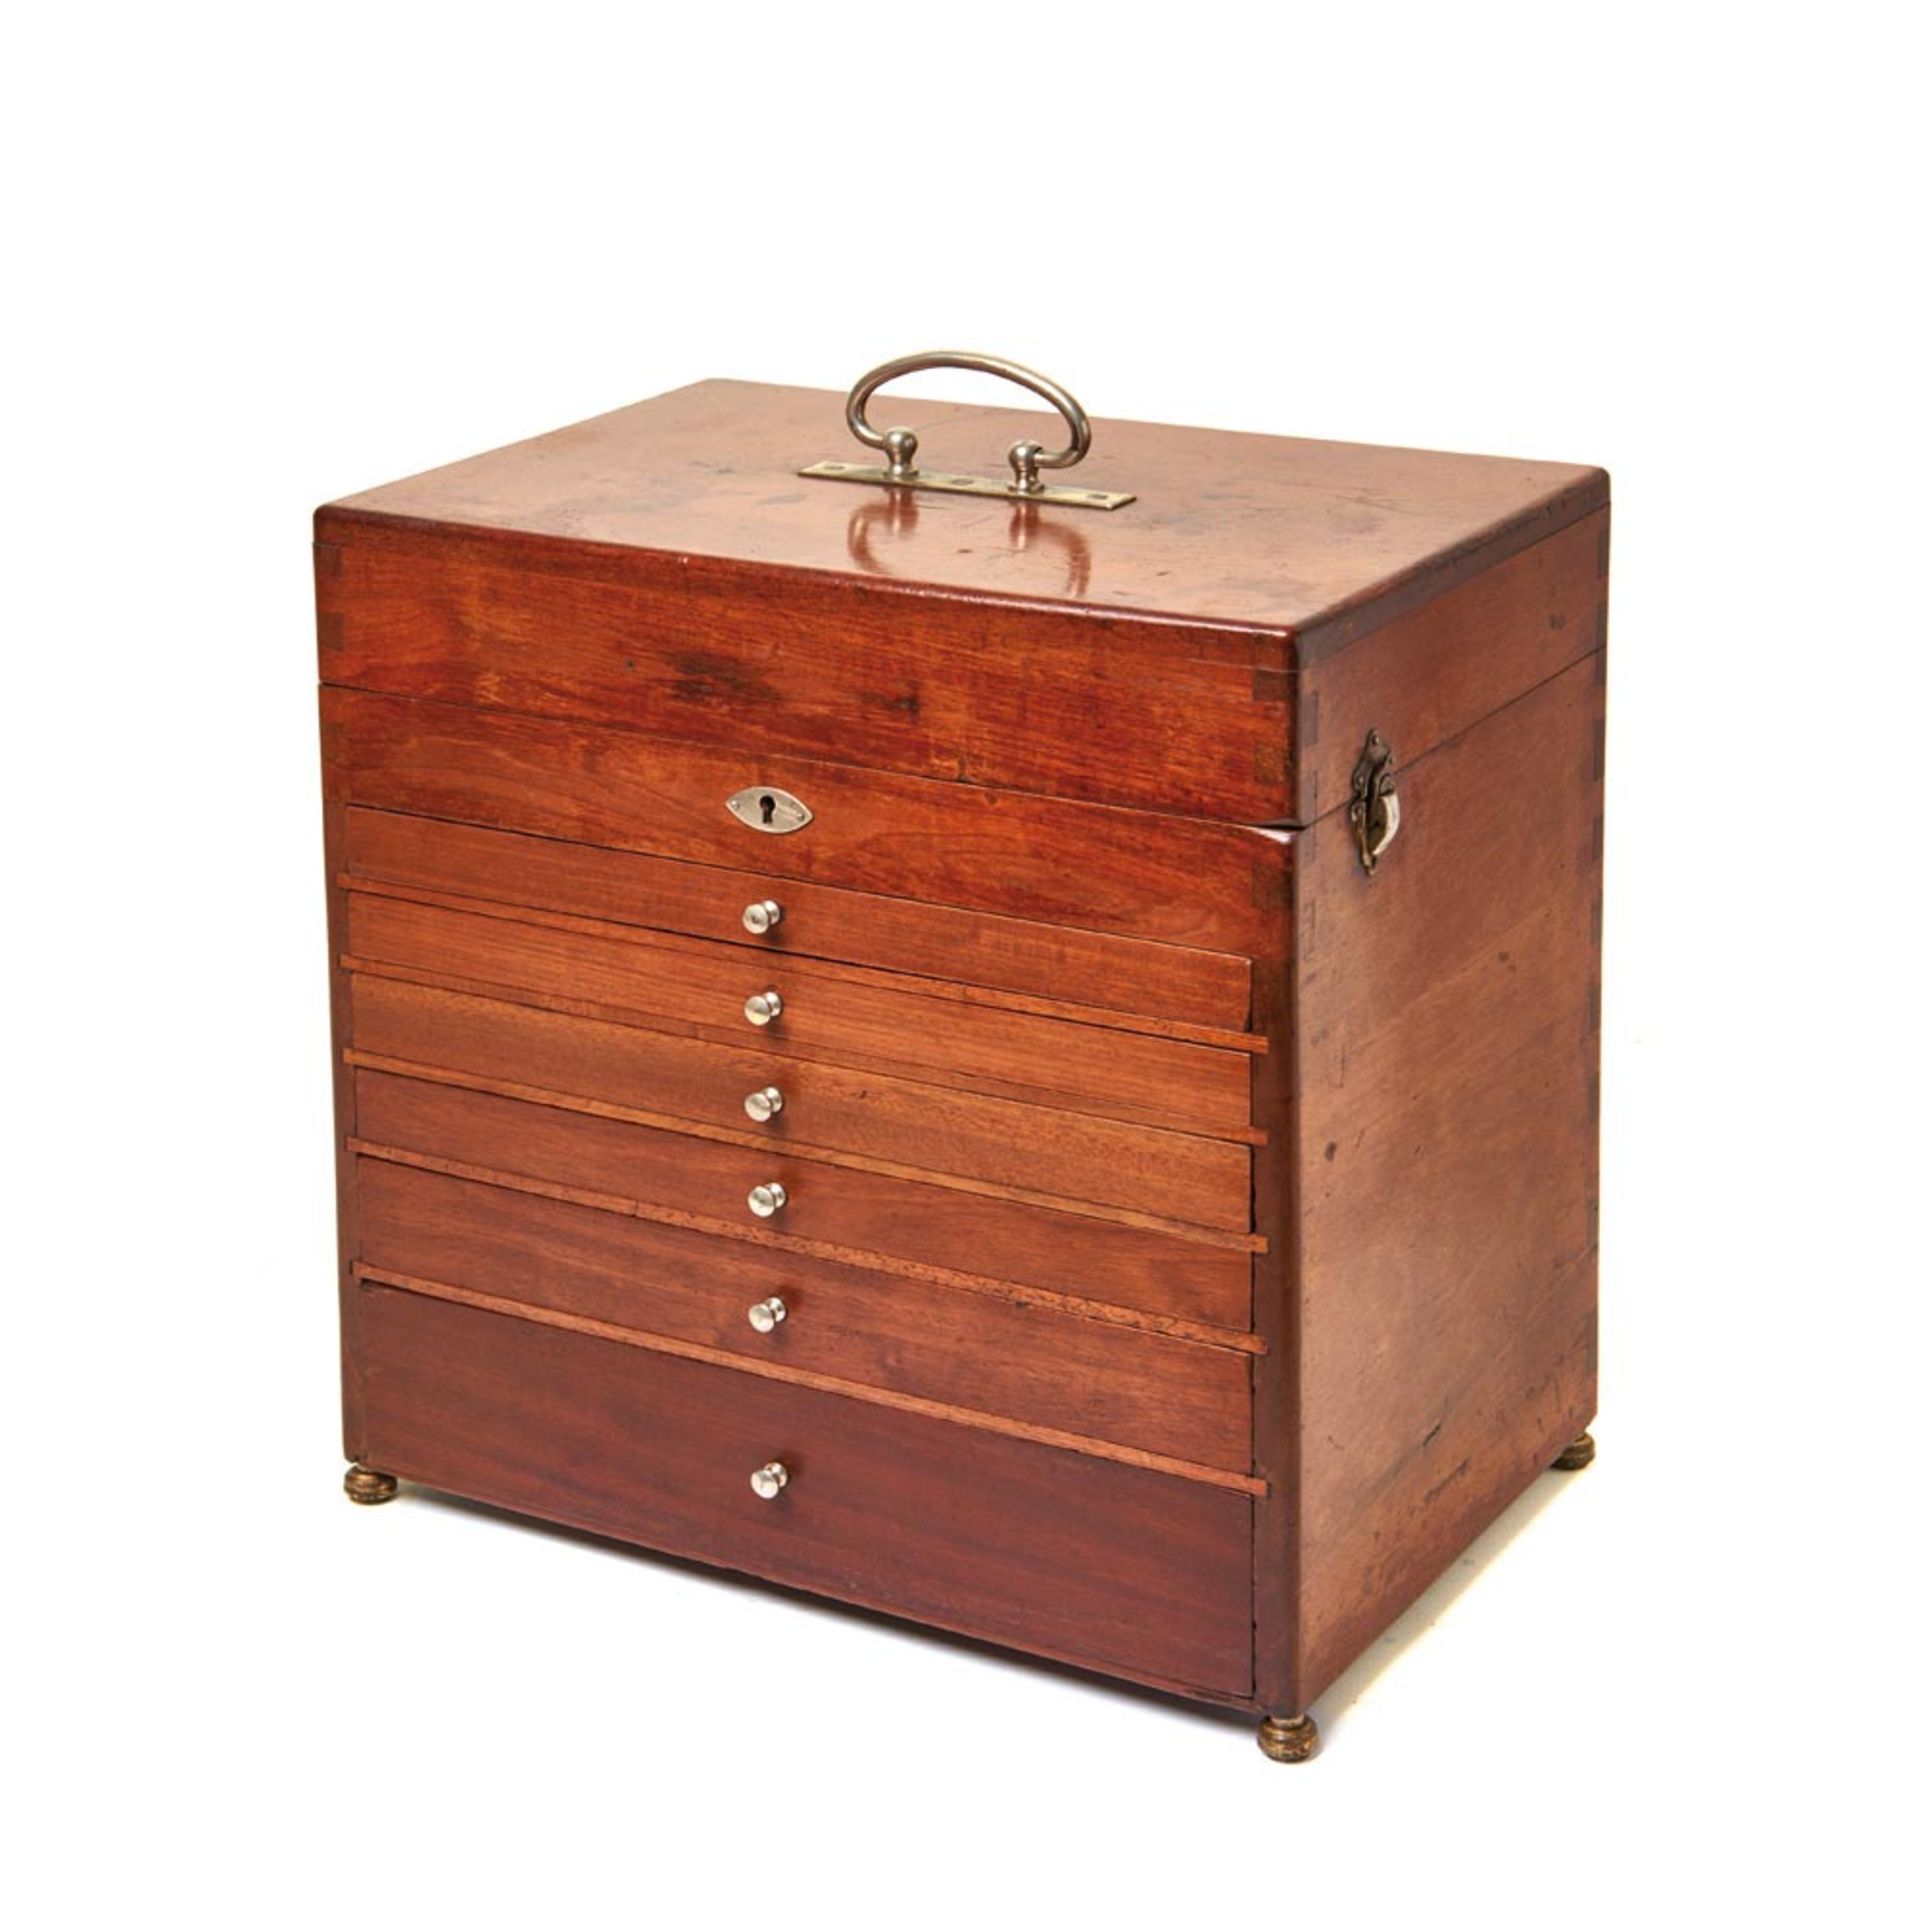 Spanish mahogany wood box early 20th century